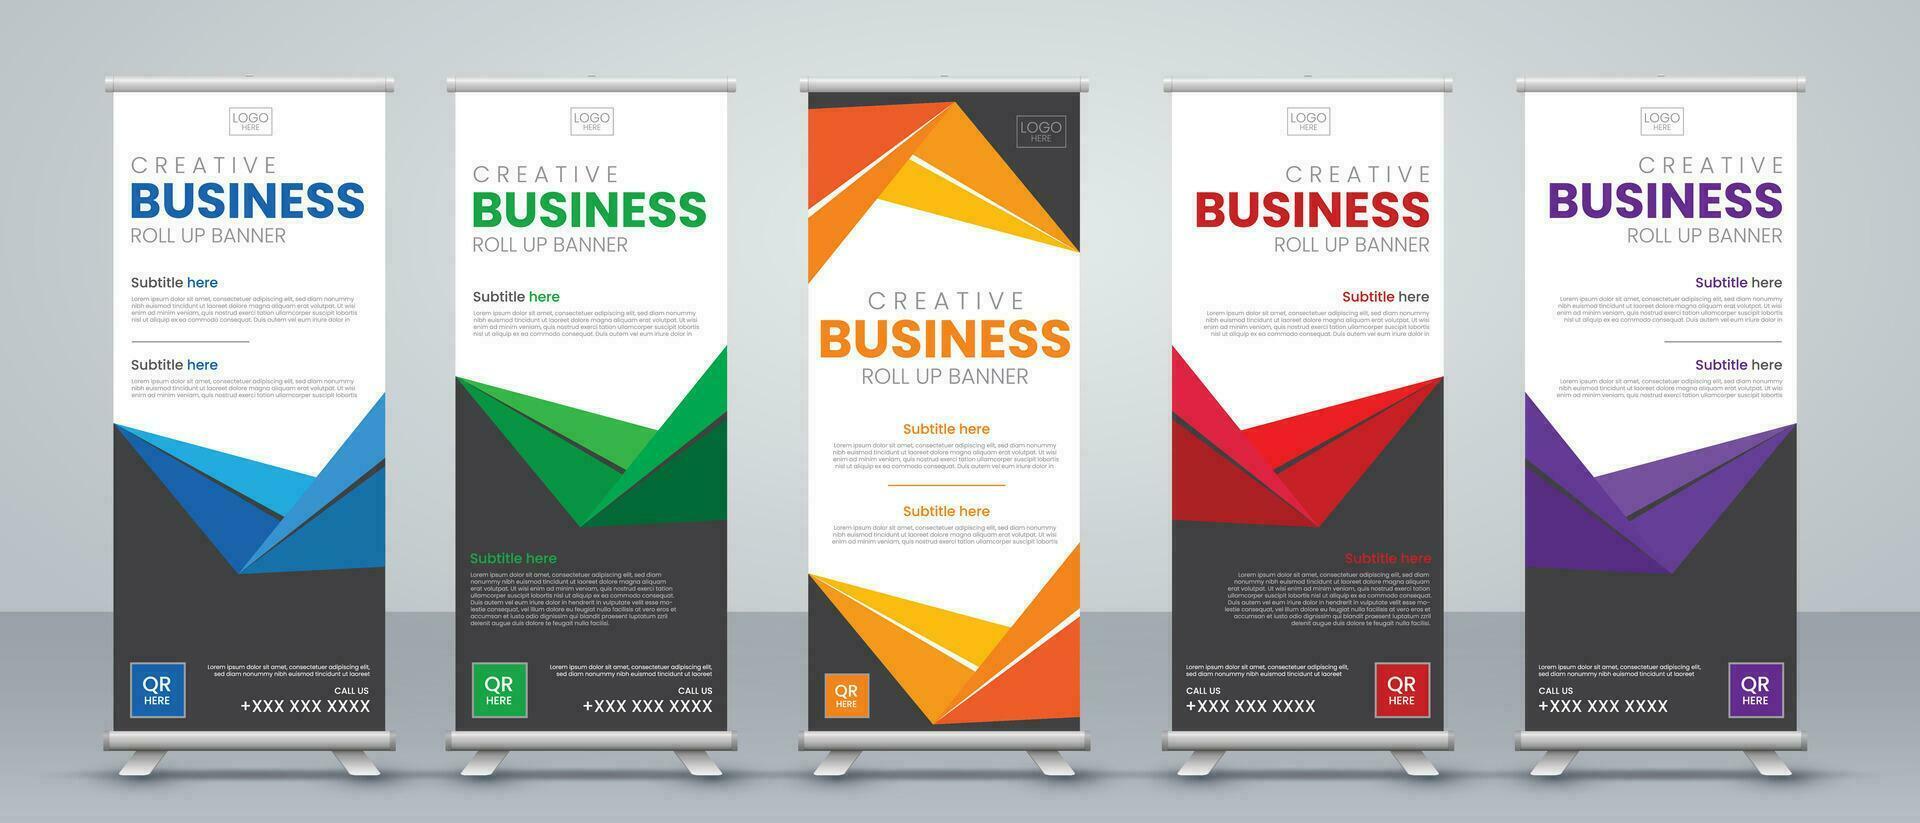 skriva ut redo företag rulla upp baner vertikal mall design, för broschyr, företag, flygblad, infografik. modern x-banderoll och flagg-banner reklam. vektor illustration